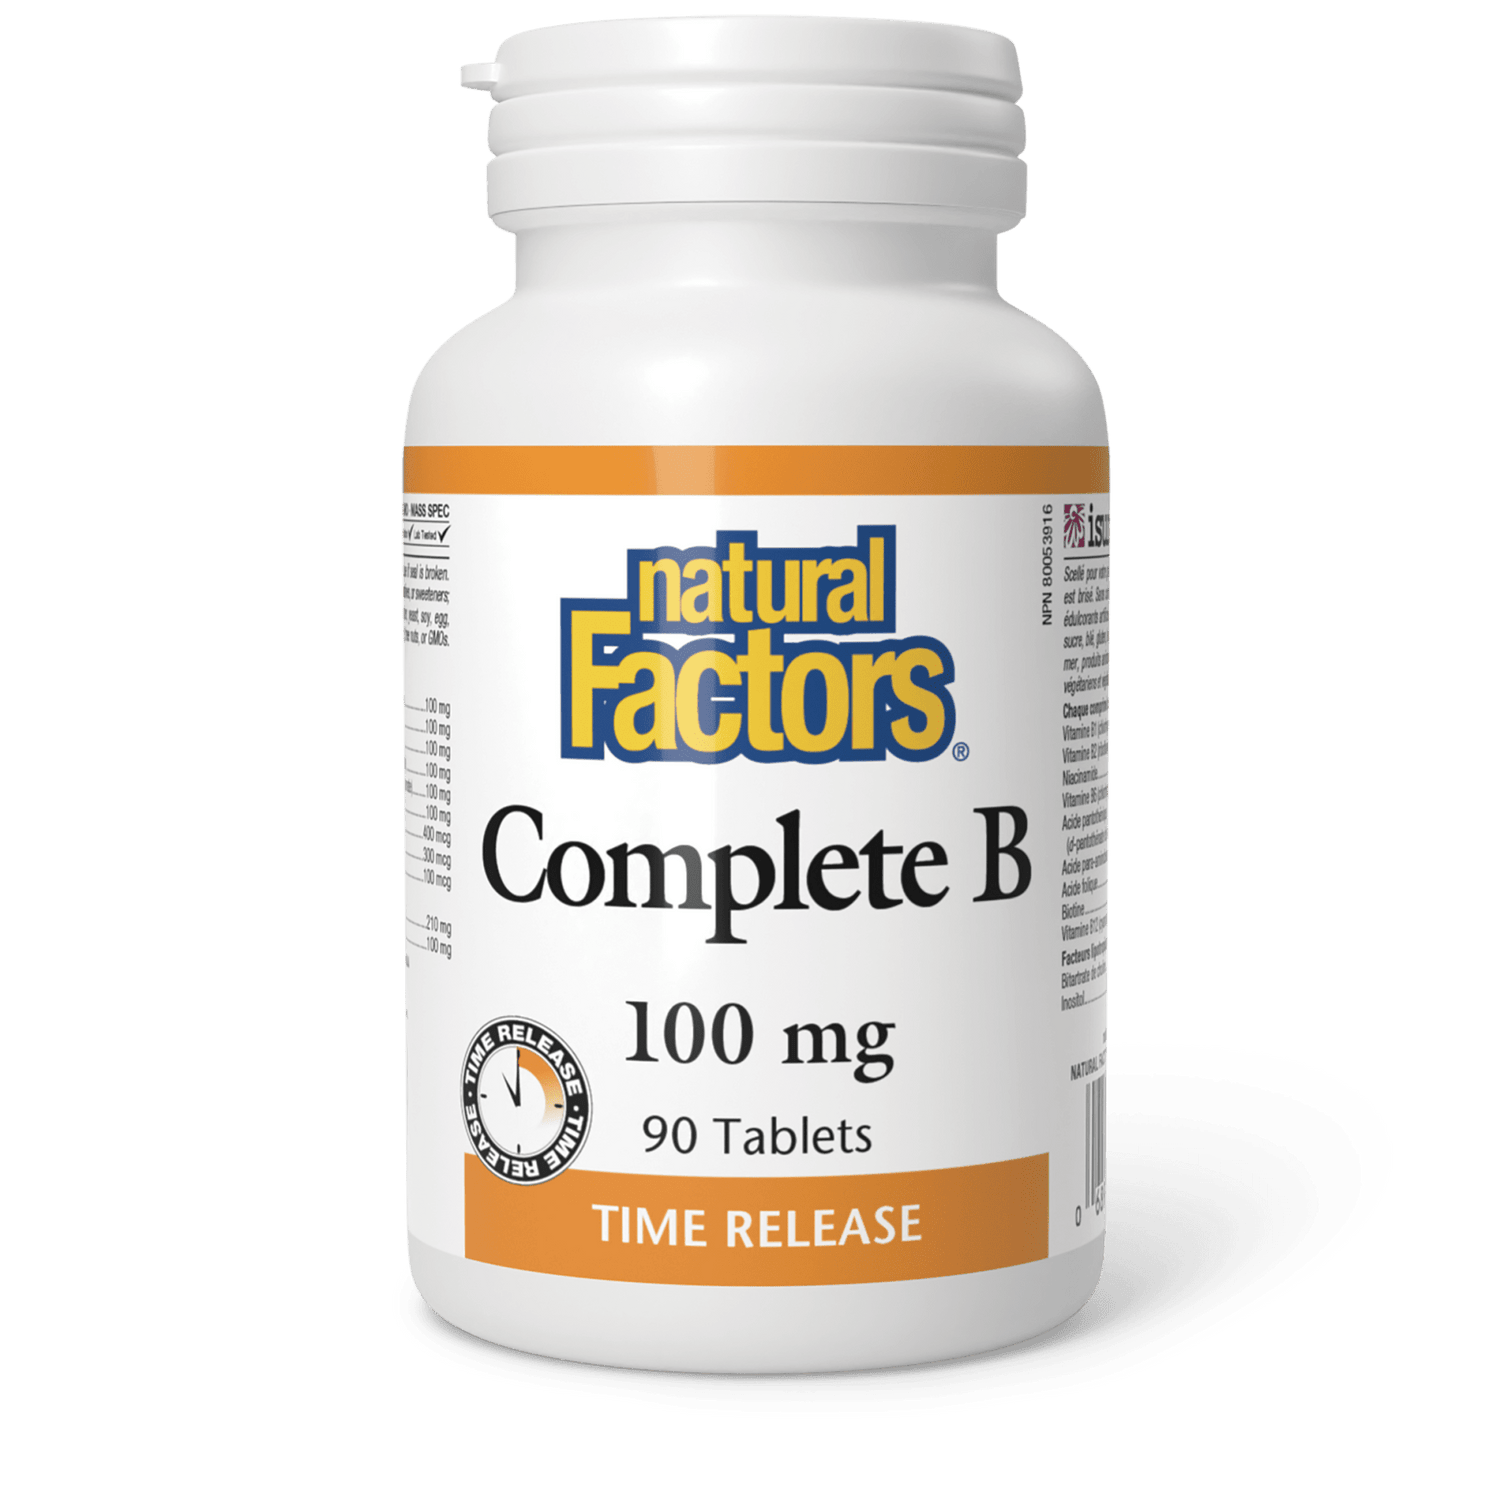 Complete B Timed Release 100 mg, Natural Factors|v|image|1141